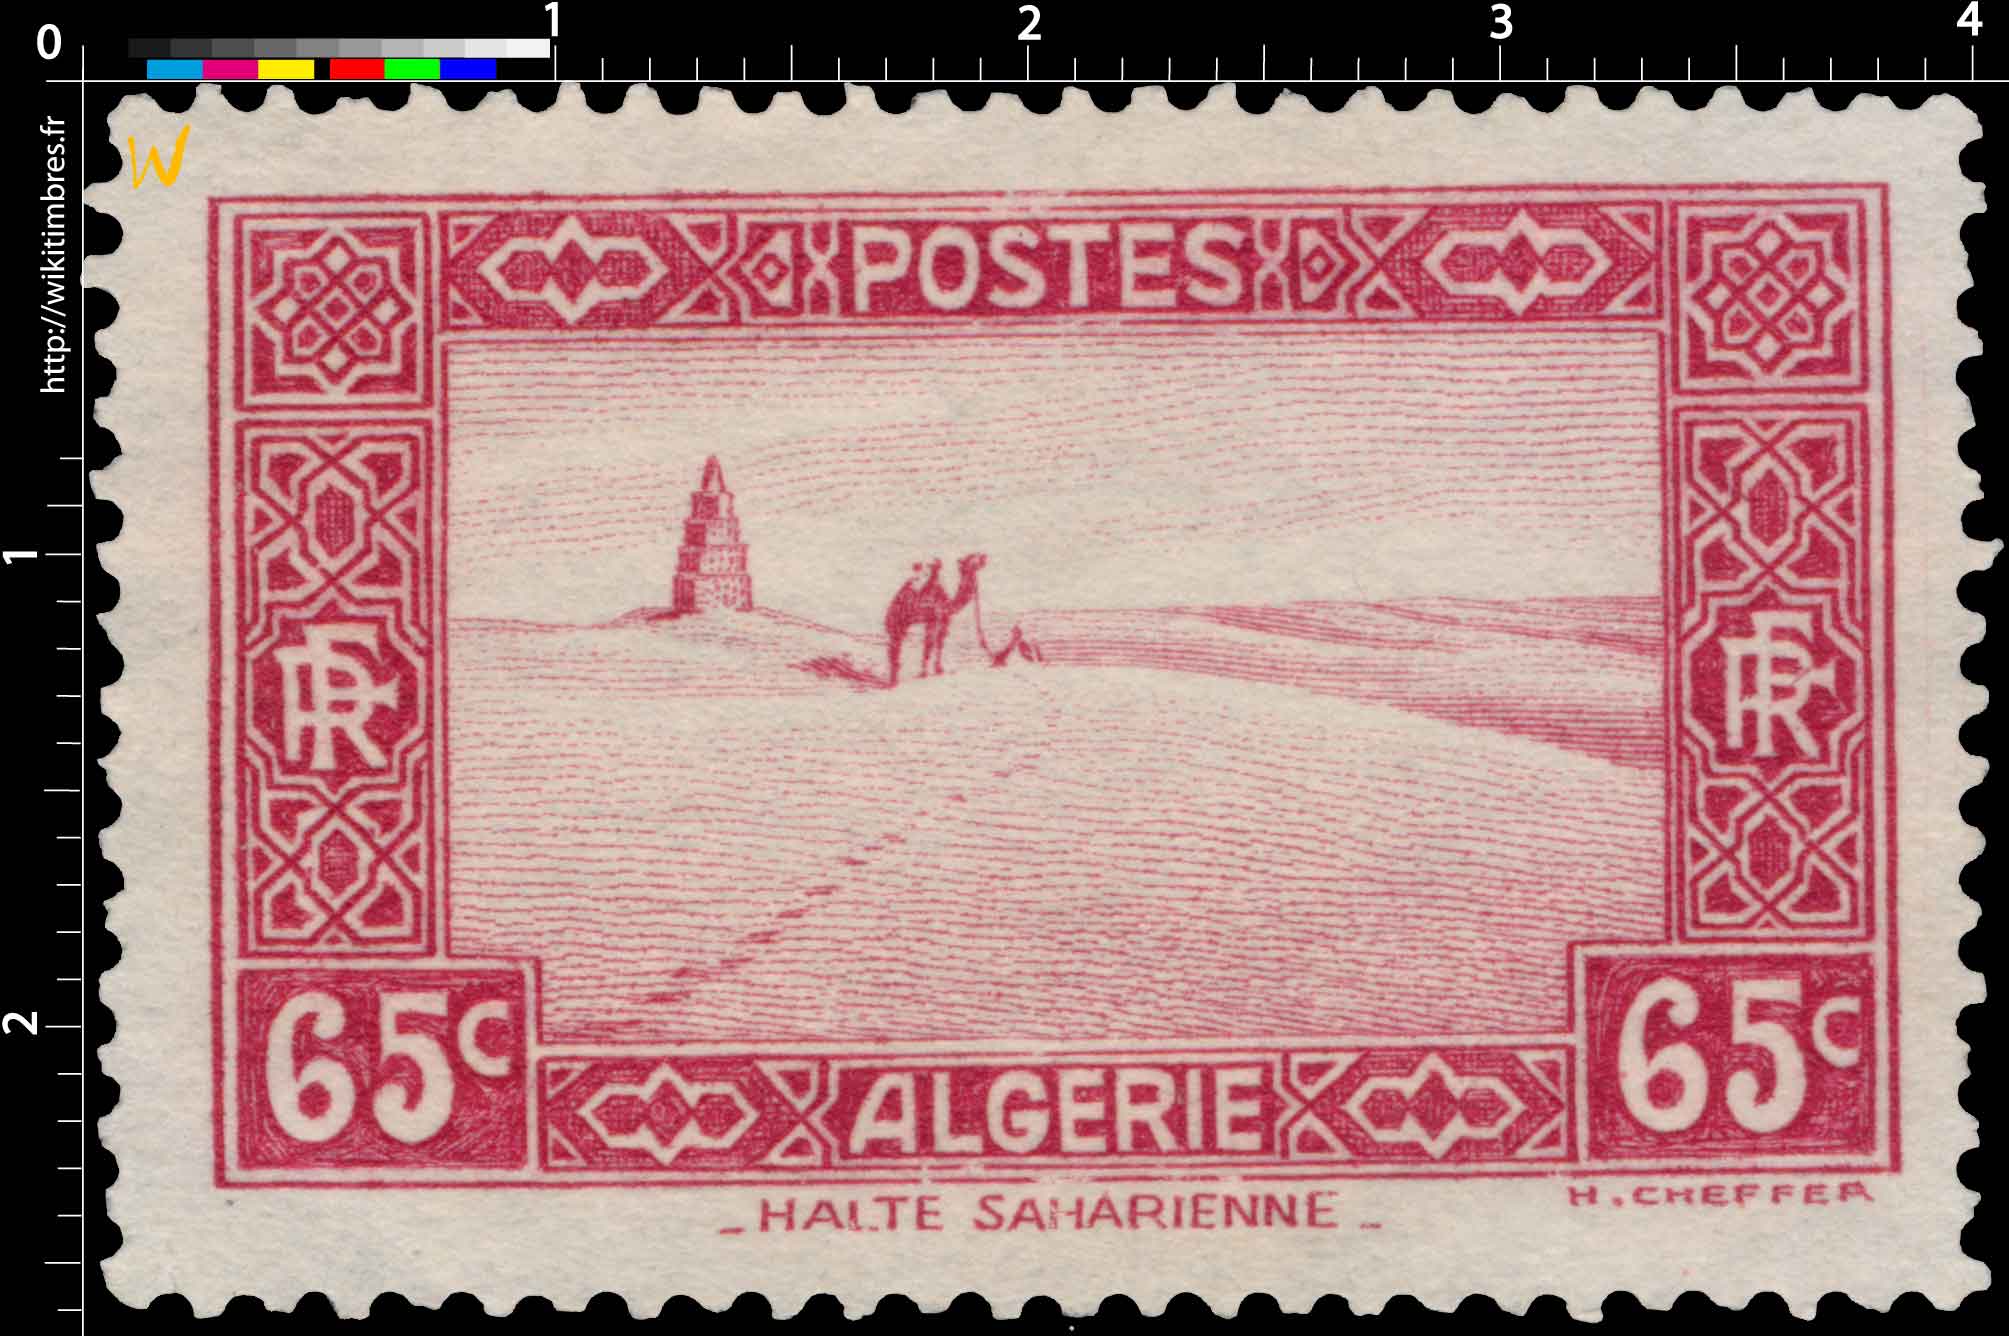 Algérie - Halte saharienne   